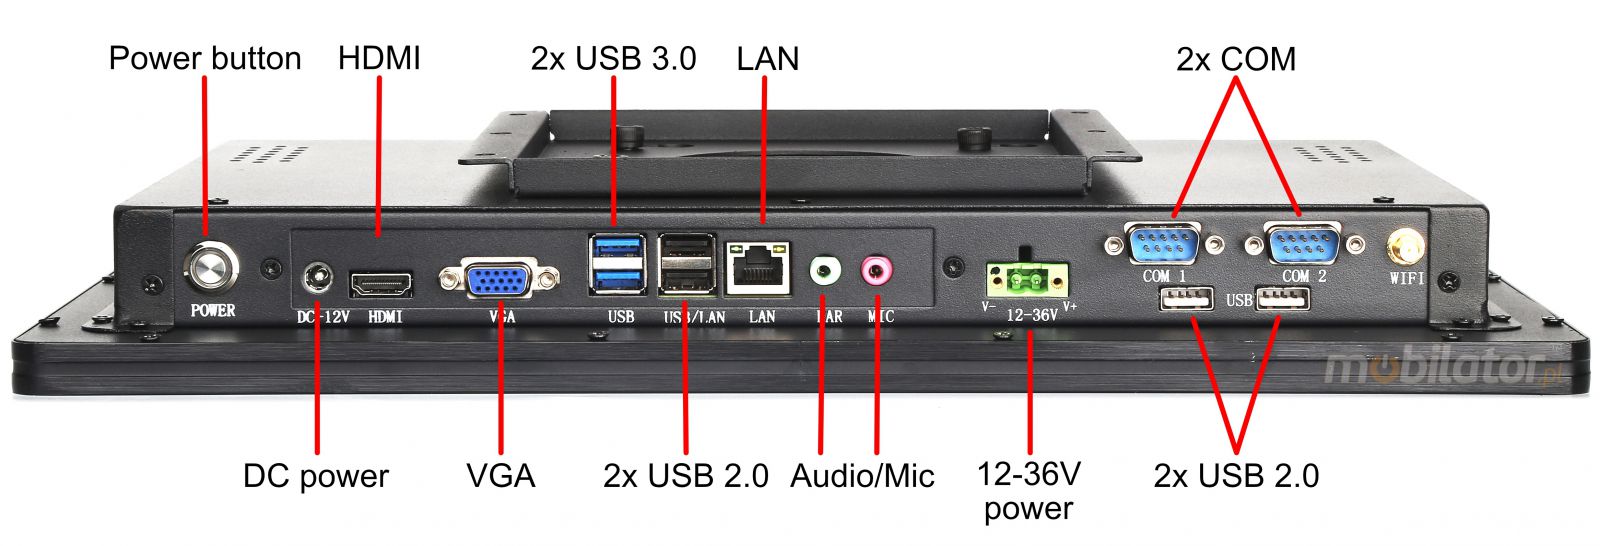 BIBOX-156PC2 zcza: 2x USB 3.0 | 2x USB 2.0 |2x COM | 2x LAN 1x VGA | 1x HDMI |DC 12V